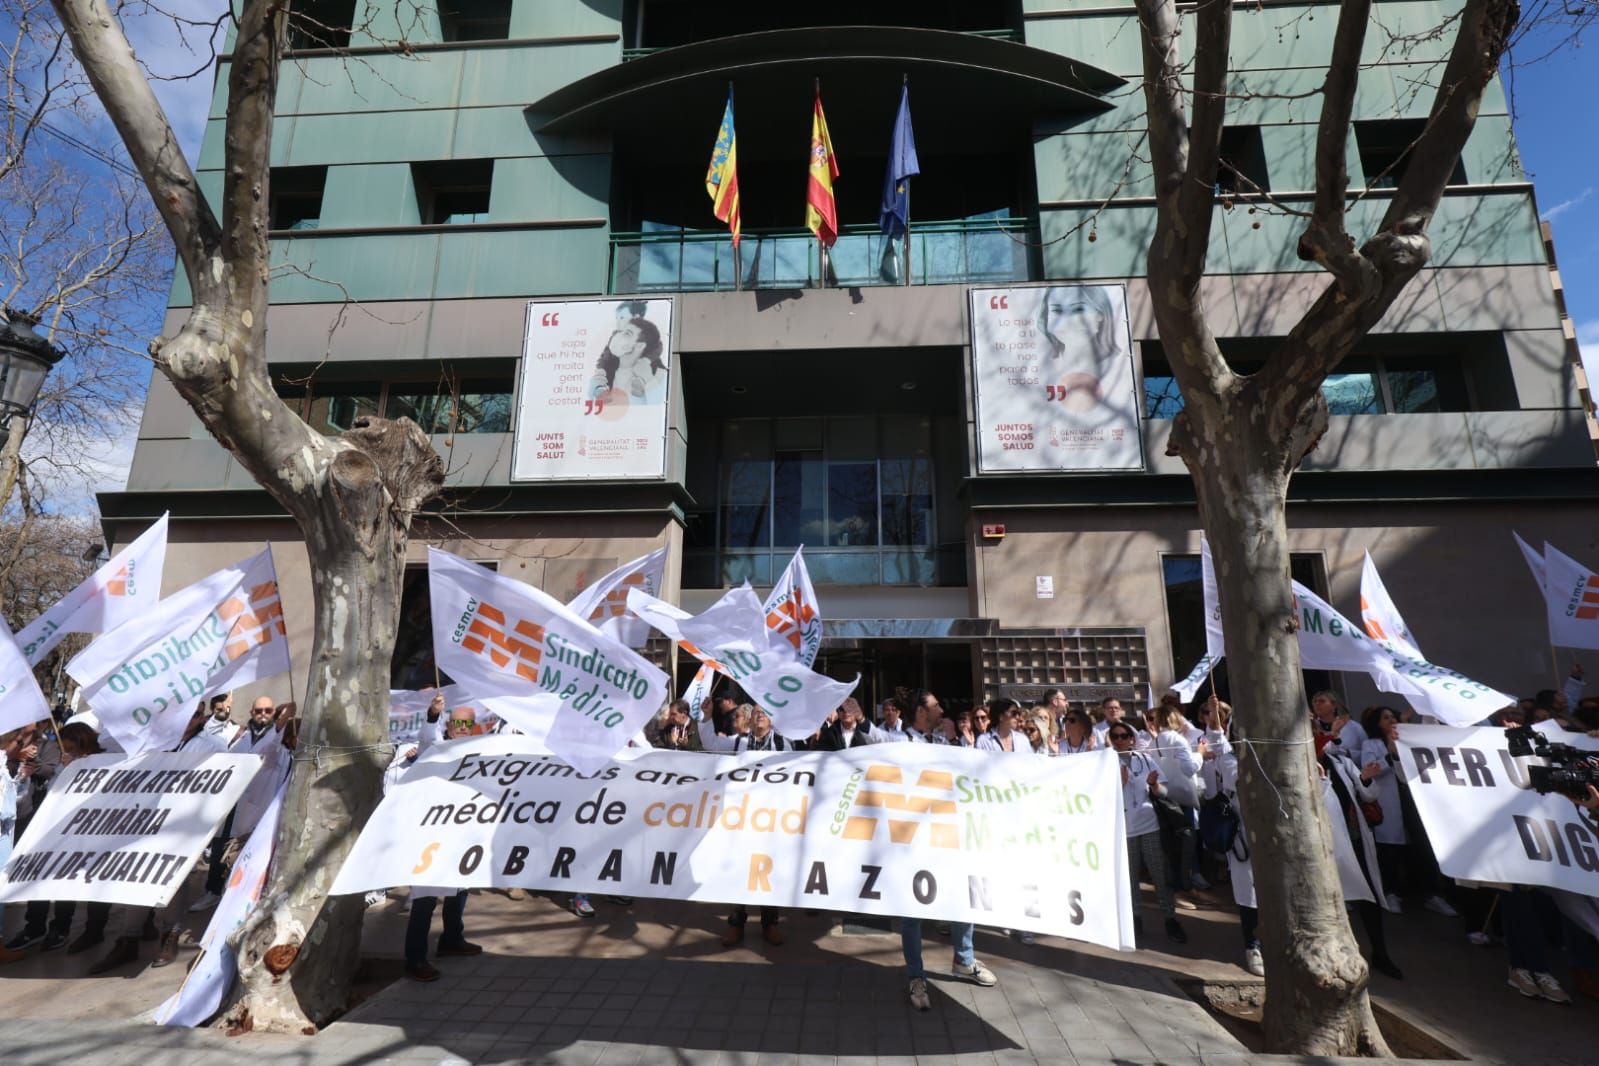 Los médicos valencianos salen a la calle a reclamar mejoras laborales